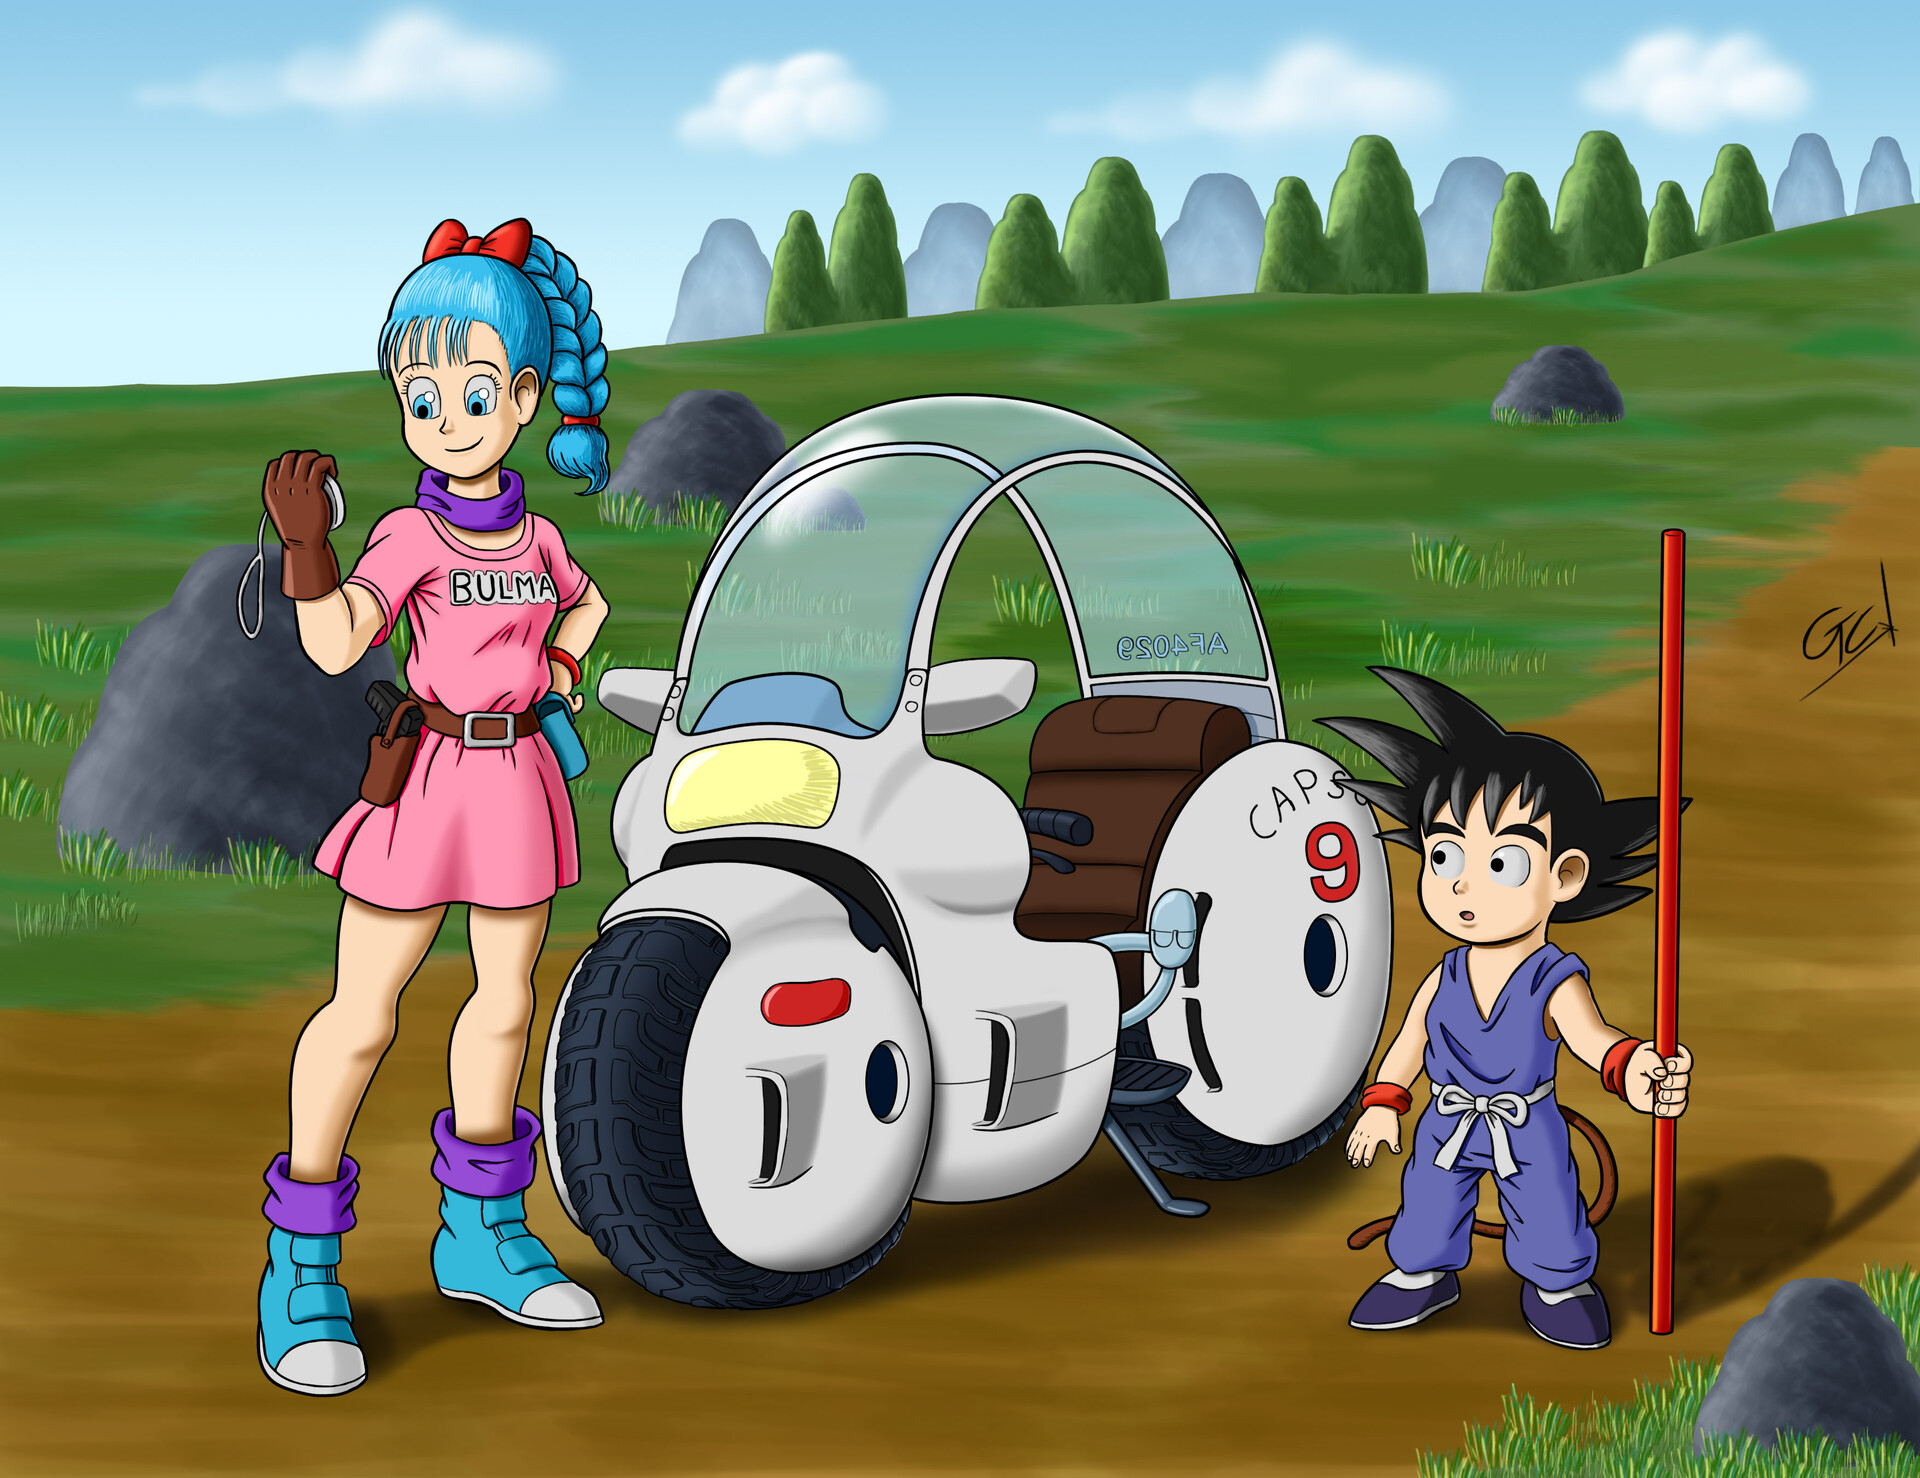 ArtStation - Goku and Bulma